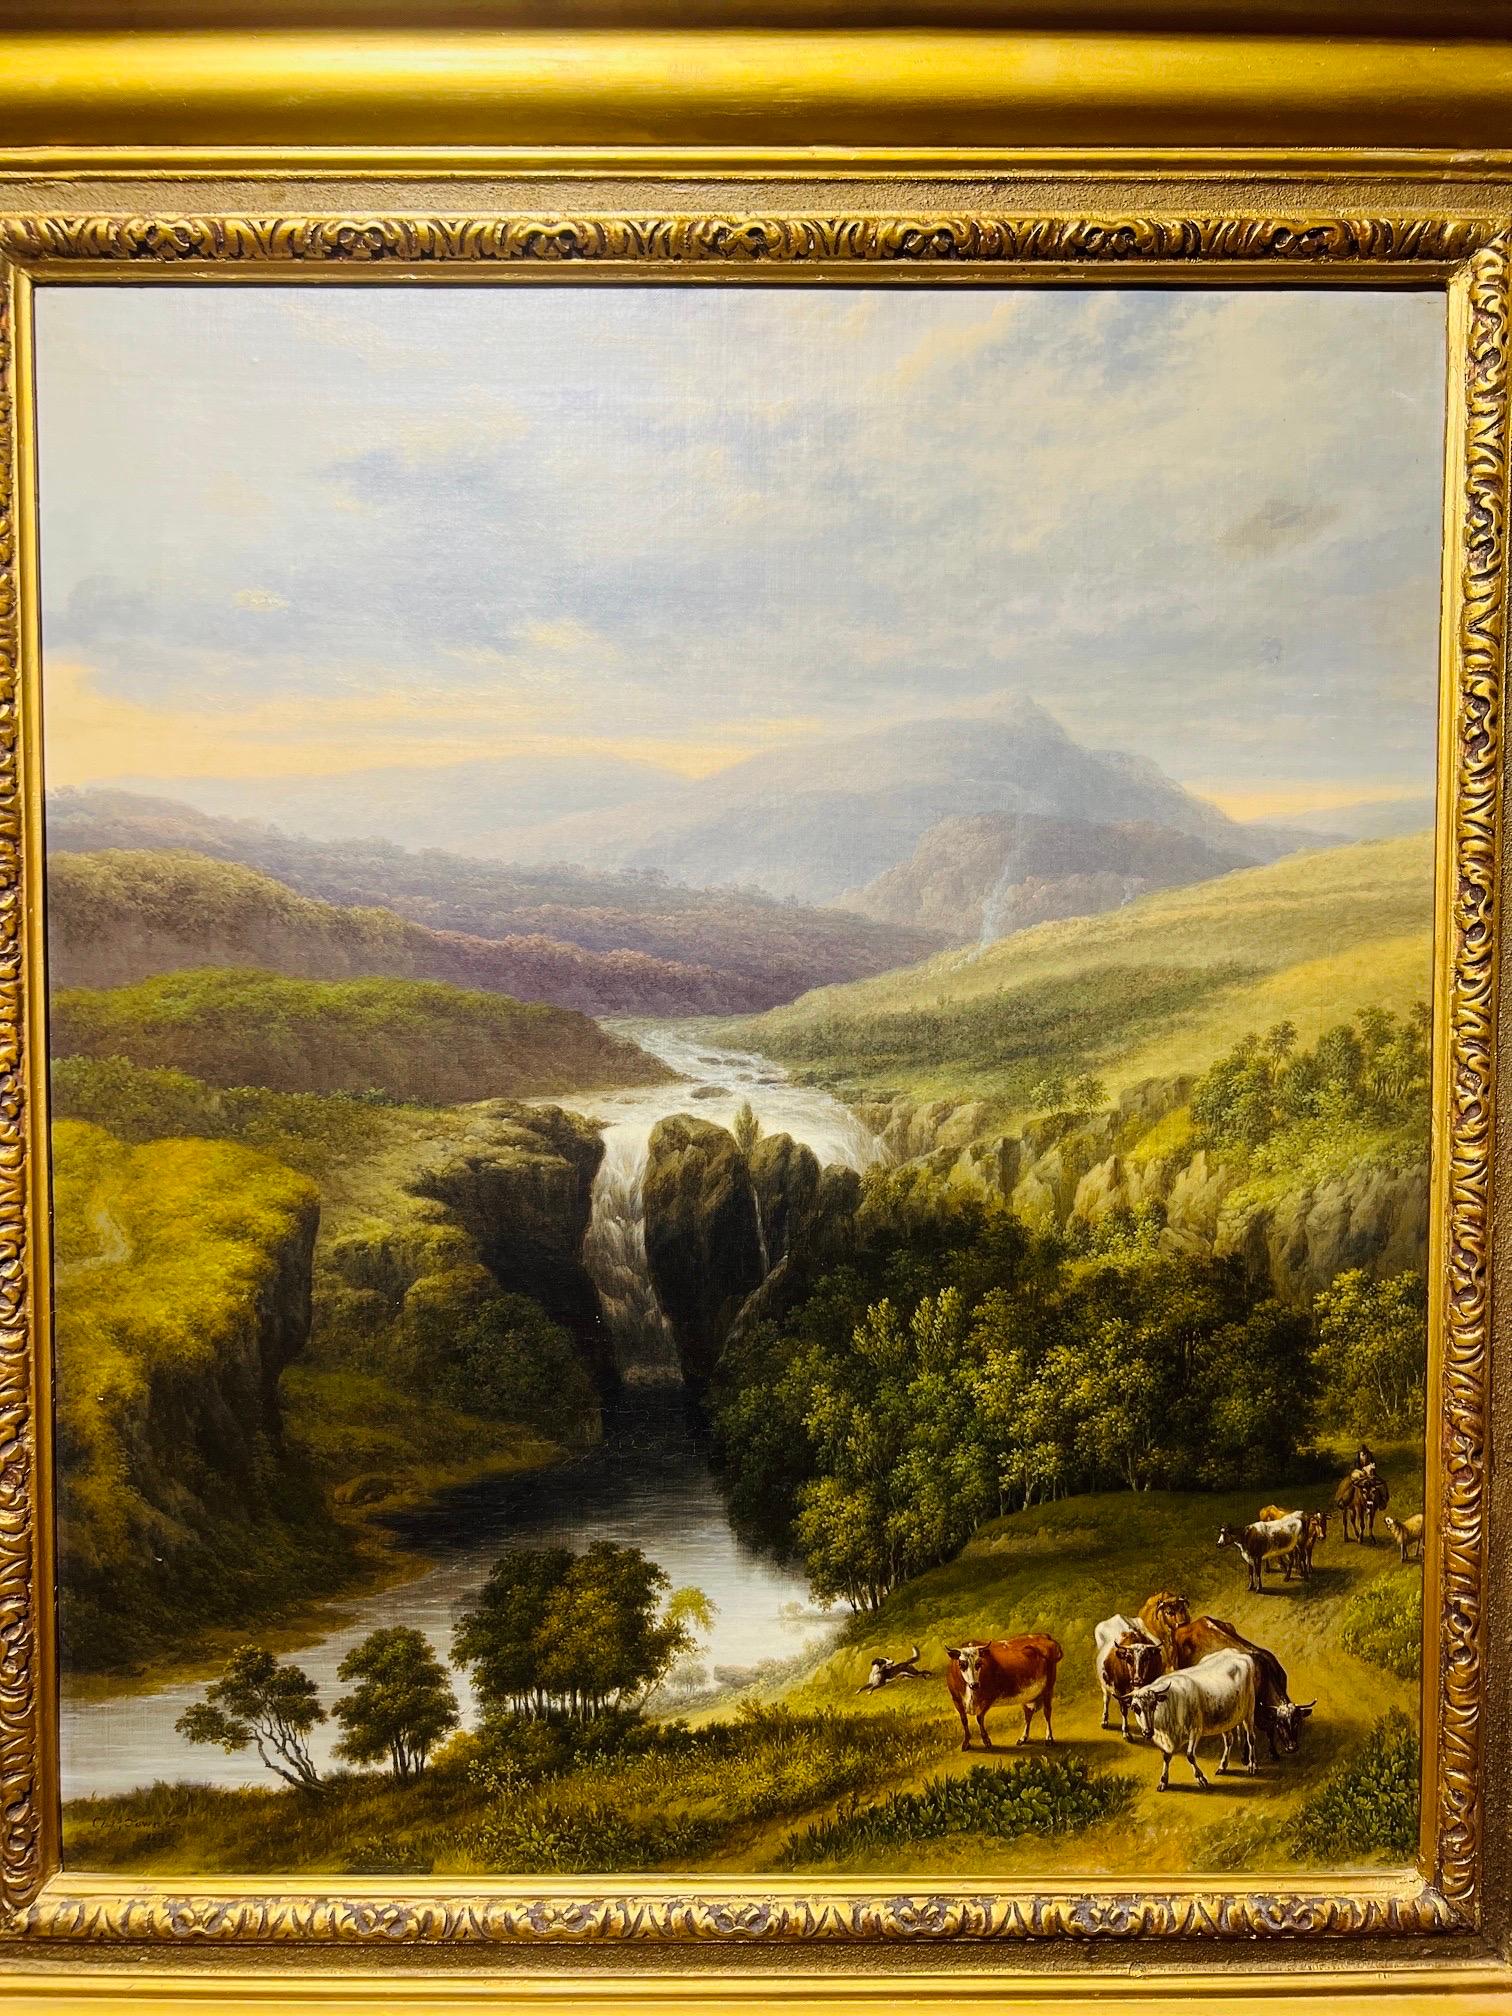 Charles Townes (1763-1840) est un peintre anglais de paysages, de chevaux et d'autres animaux, de courses de chevaux et de scènes de chasse.

Townes est né à Wigan, fils de Richard Townes, un portraitiste de Liverpool, et de sa femme Mary. Son